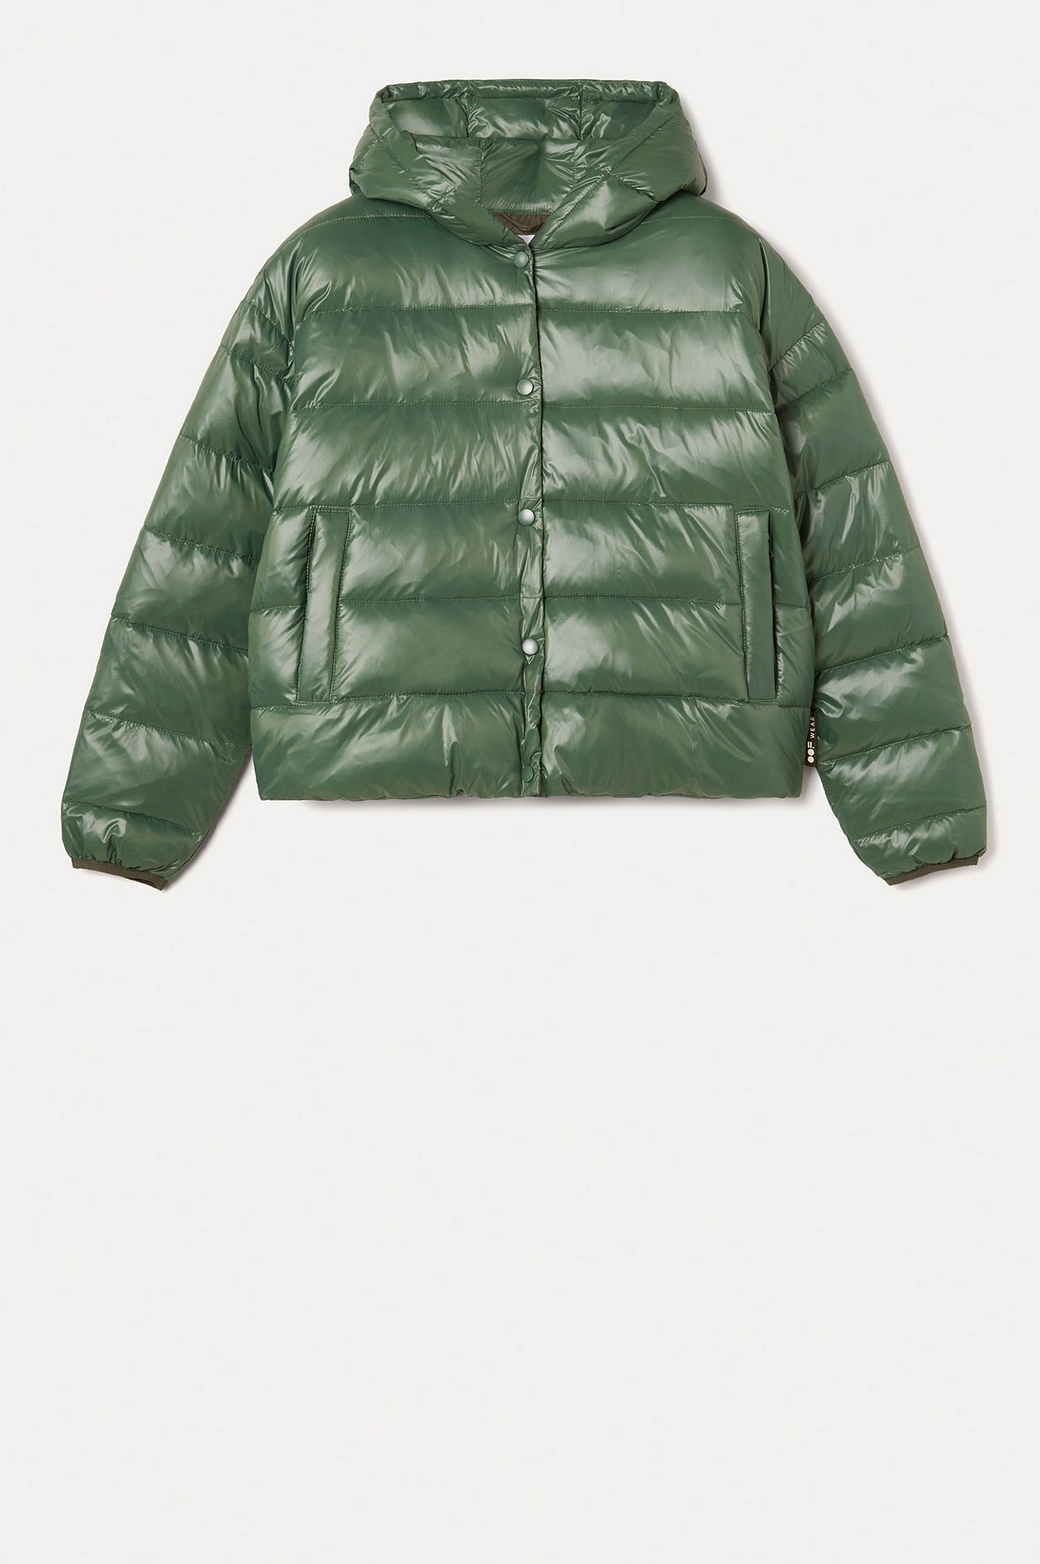 Green waist length puffer jacket.